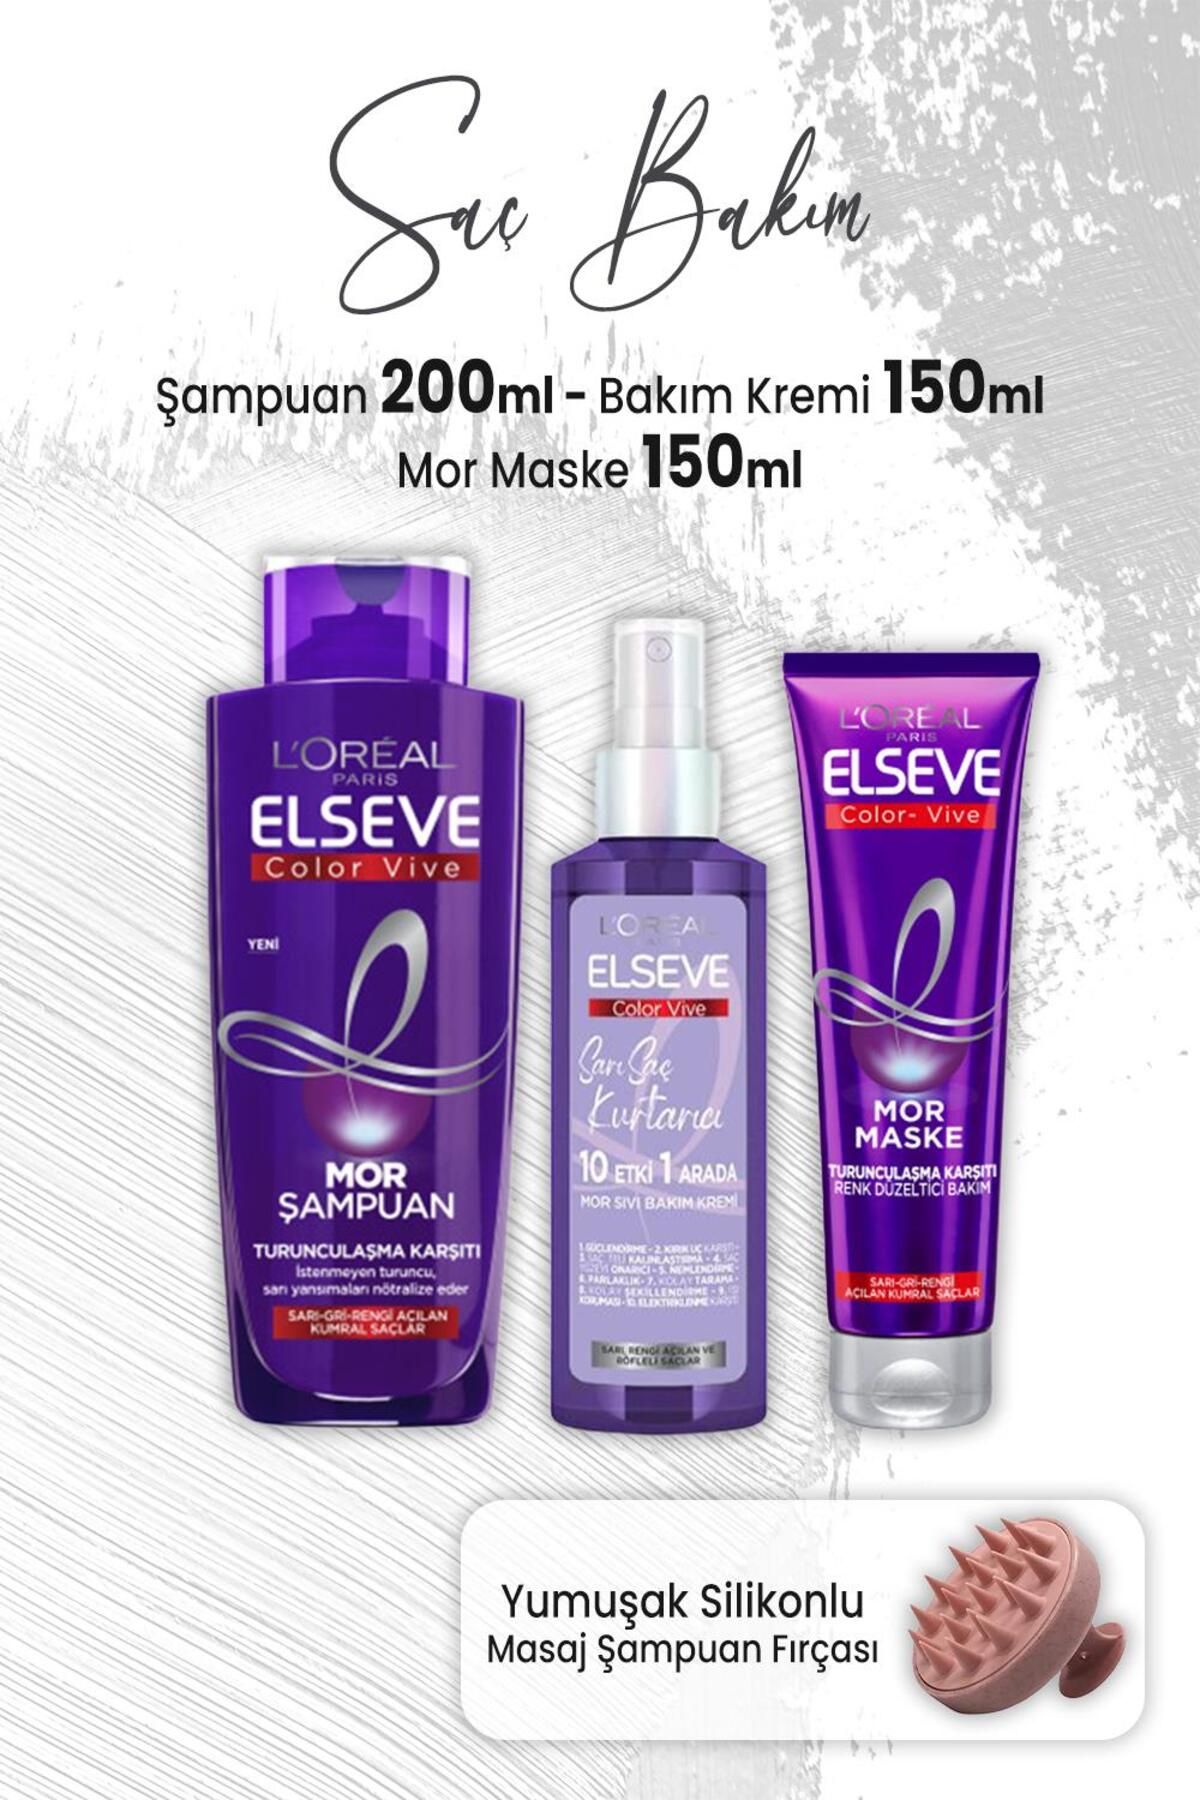 Elseve Color Vive Mor Şampuan 200 Ml, Maske 150 Ml, Sıvı Bakım Kremi 150 ml Ve Masaj Şampuan Fırçası